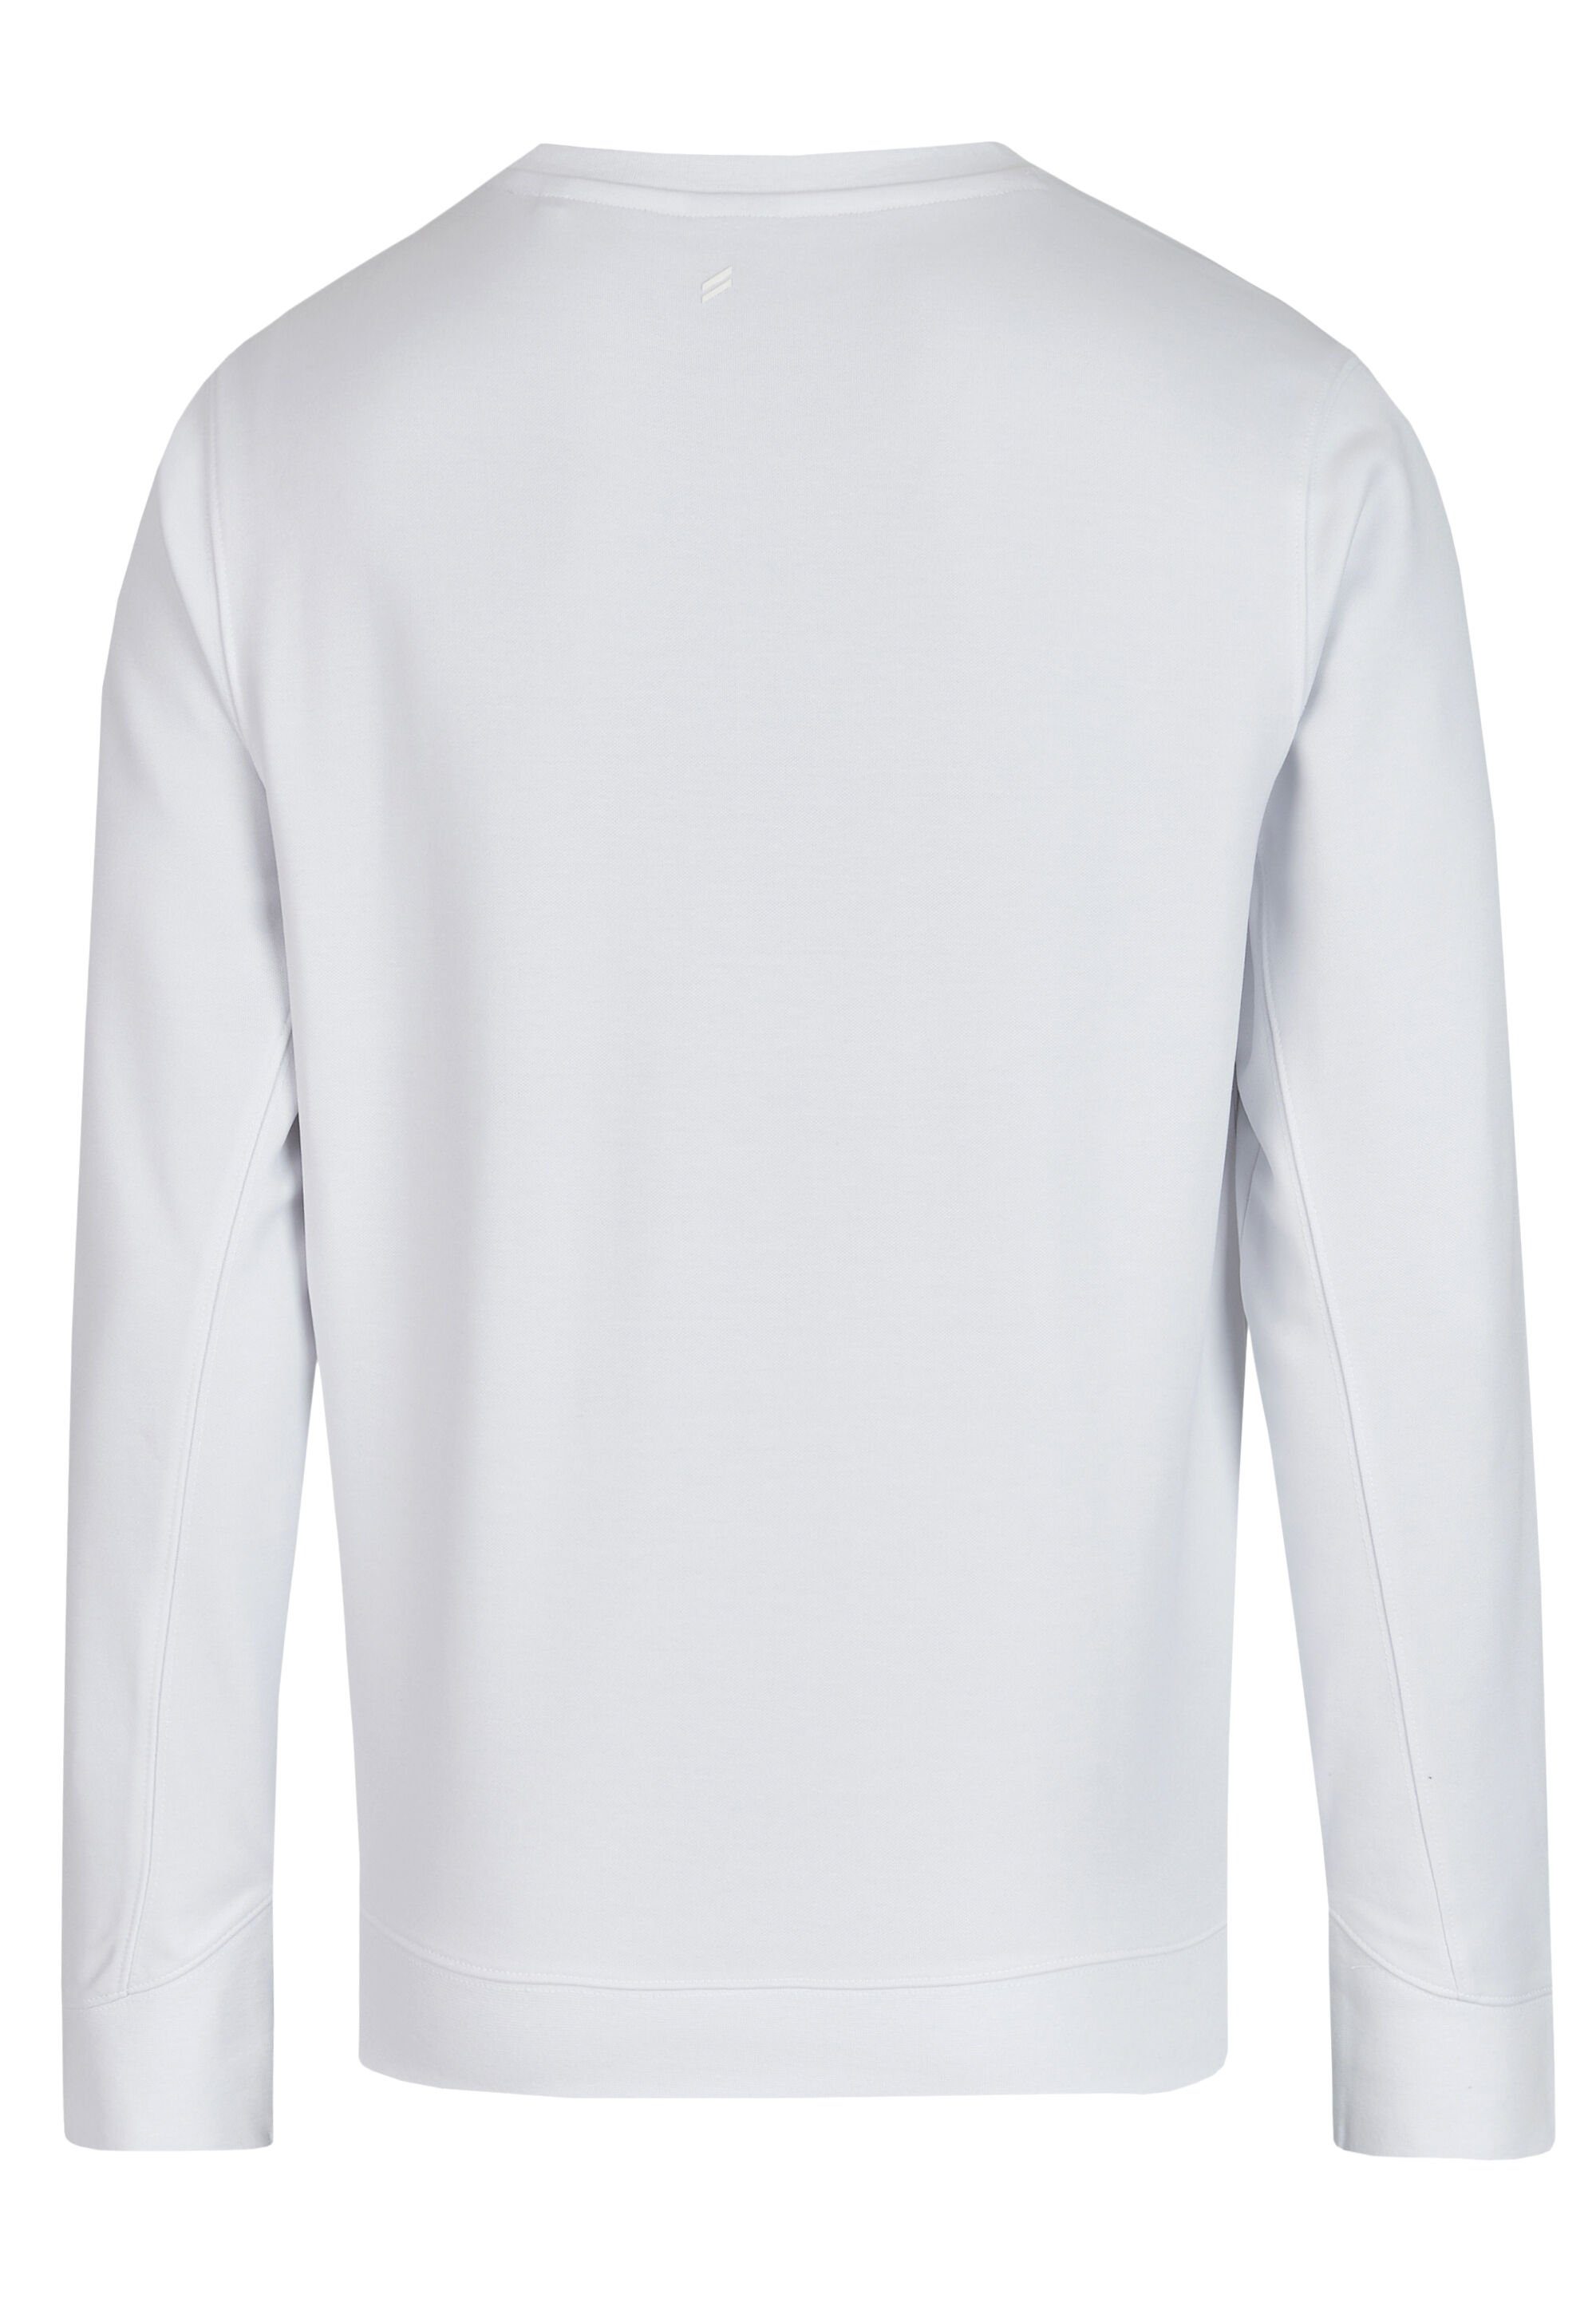 HECHTER PARIS Sweatshirt Logo-Print white mit